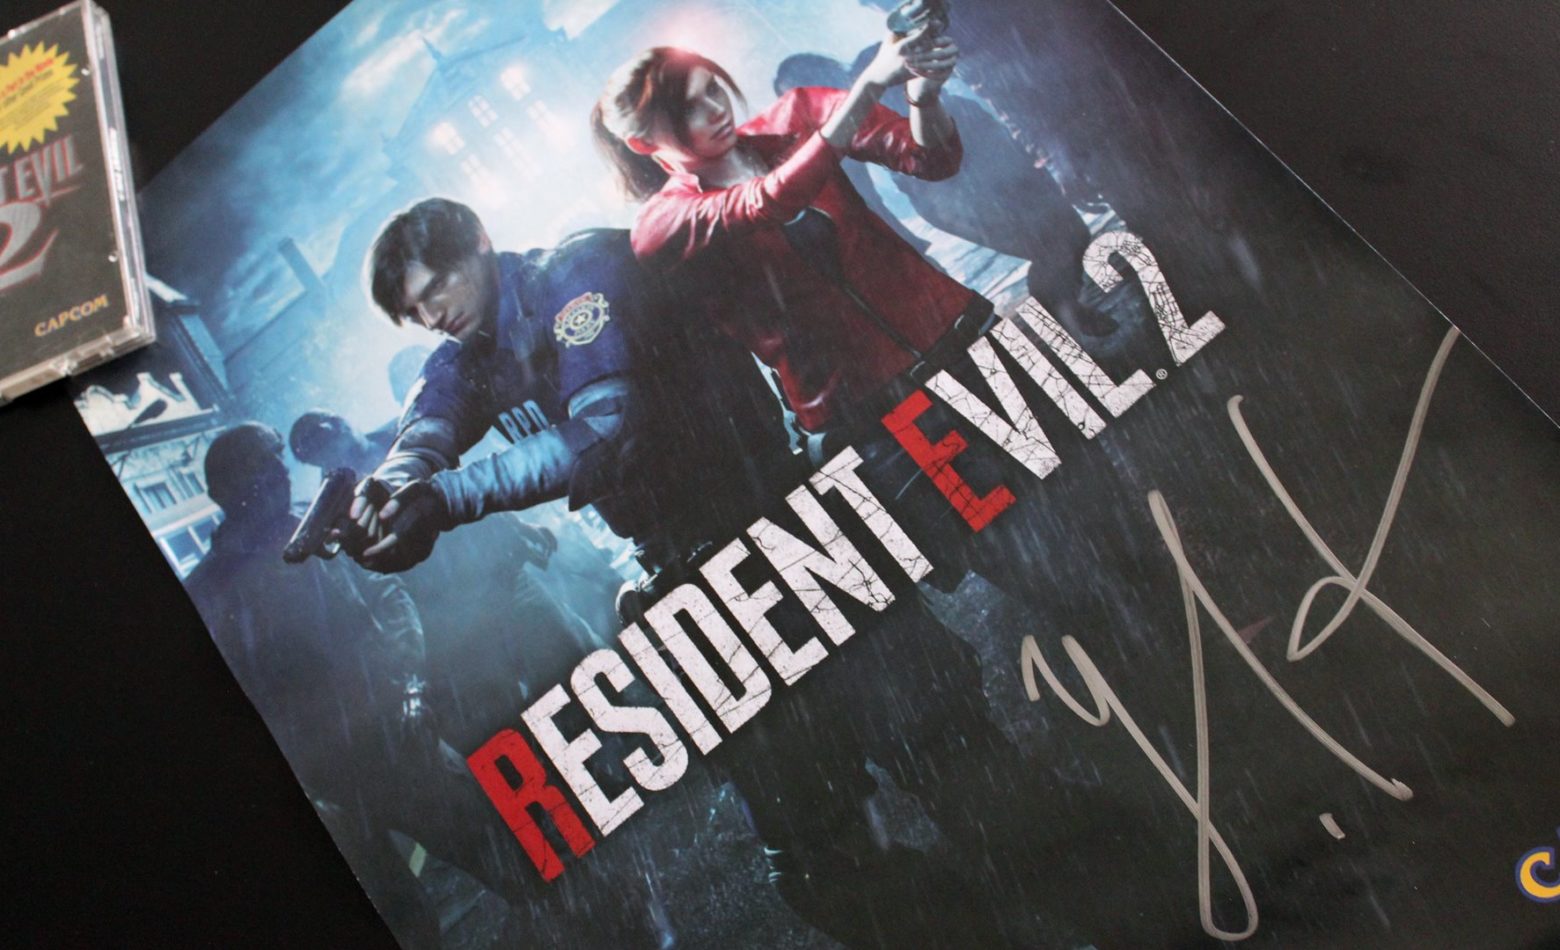 Conheça o vencedor do poster autografado de Resident Evil 2